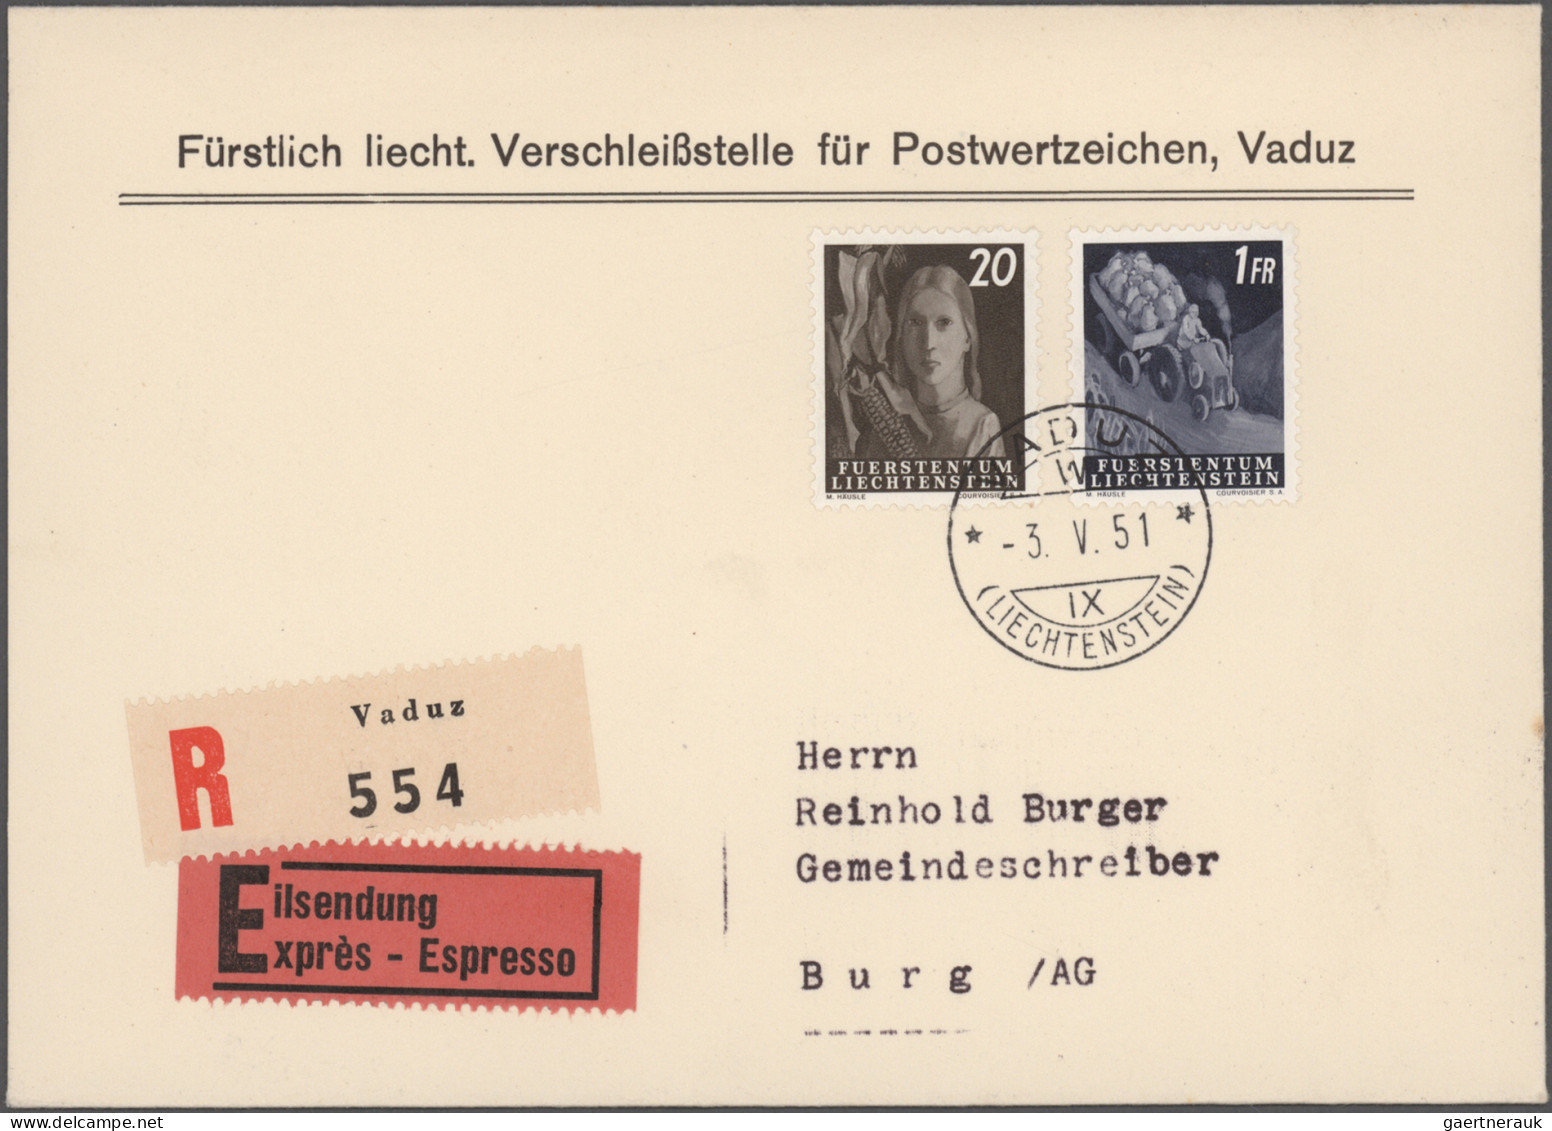 Liechtenstein: 1945/1990, umfangreiche Sammlung bis ca. 1962 mit vielen Briefen